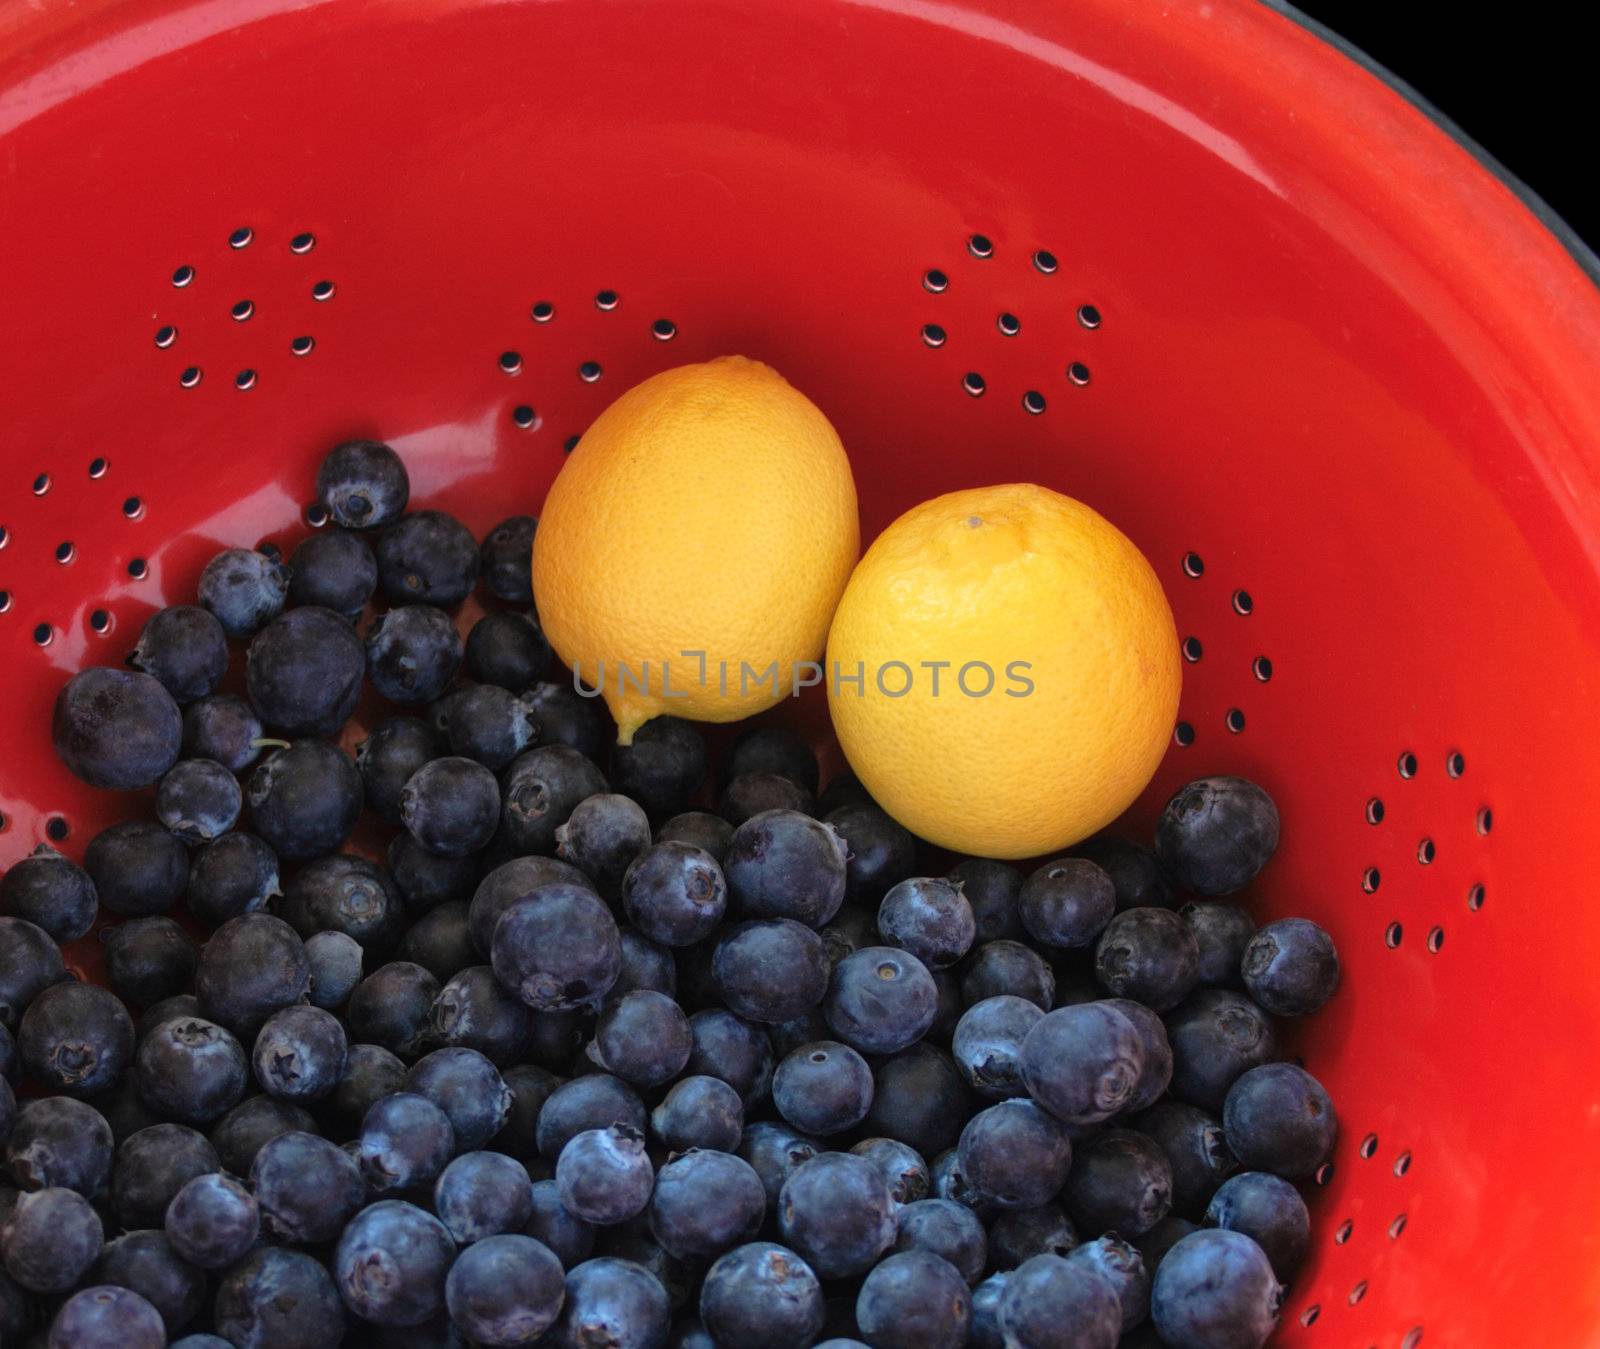 blueberries and lemons by nebari